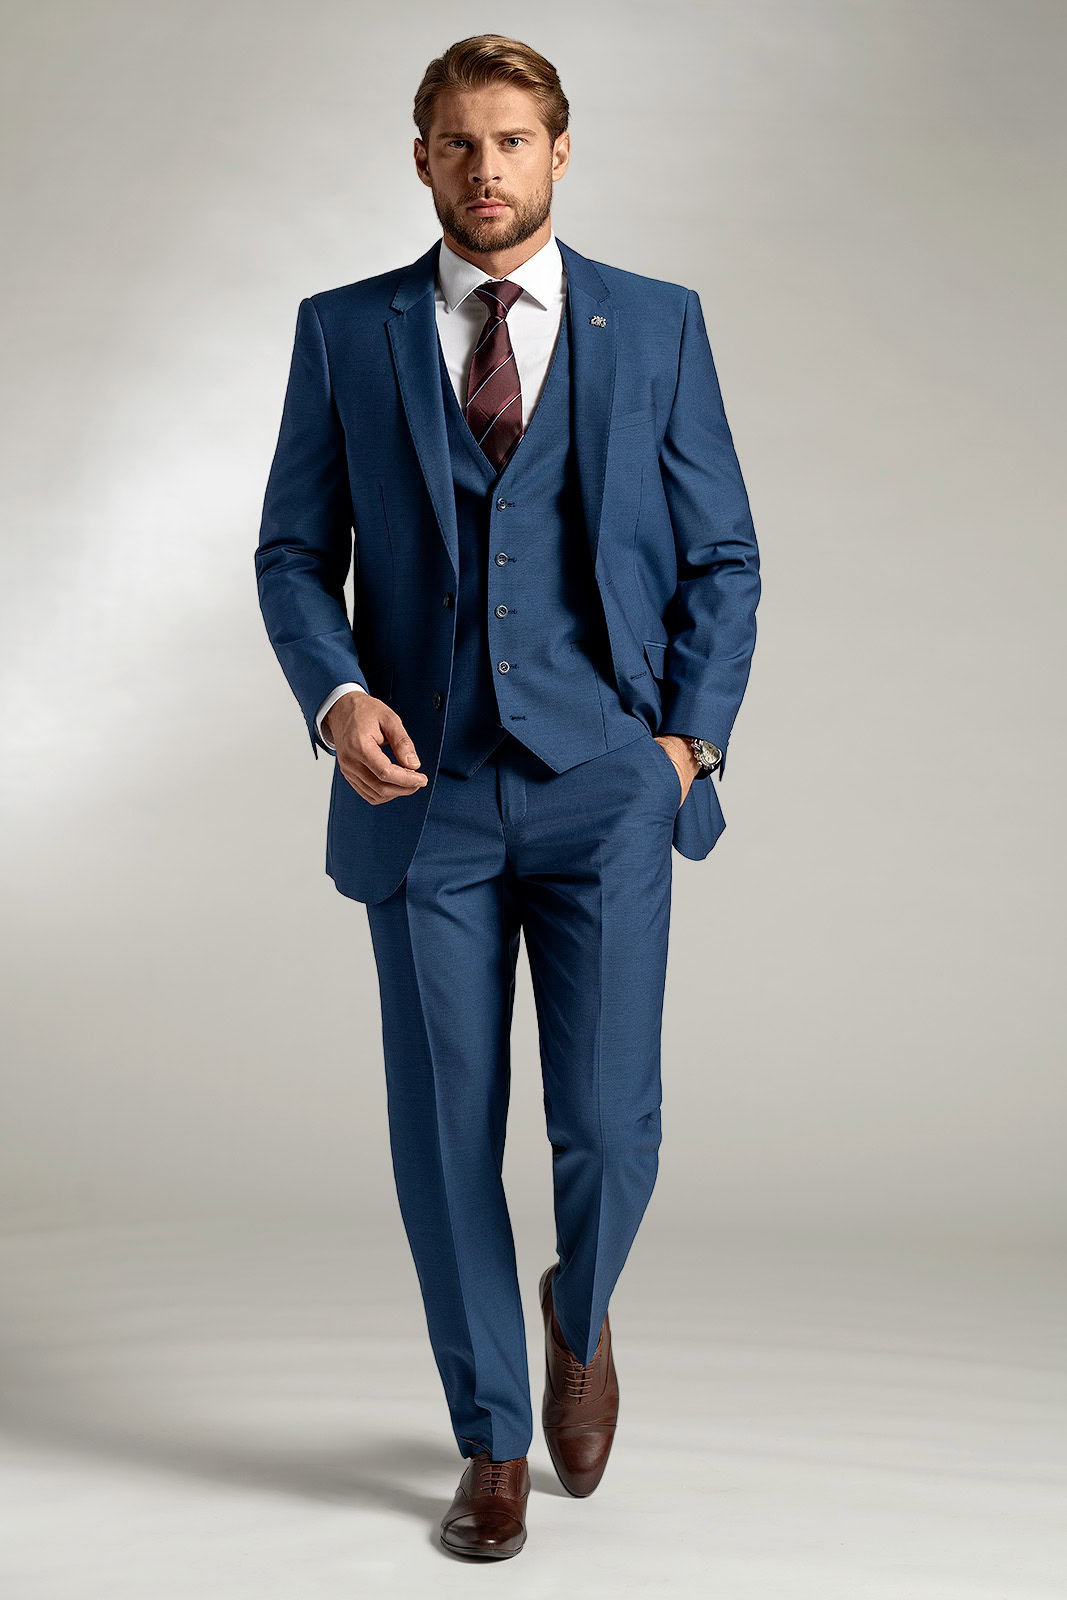 Pánský oblek BANDI Boscetti Blu, Tailored Fit